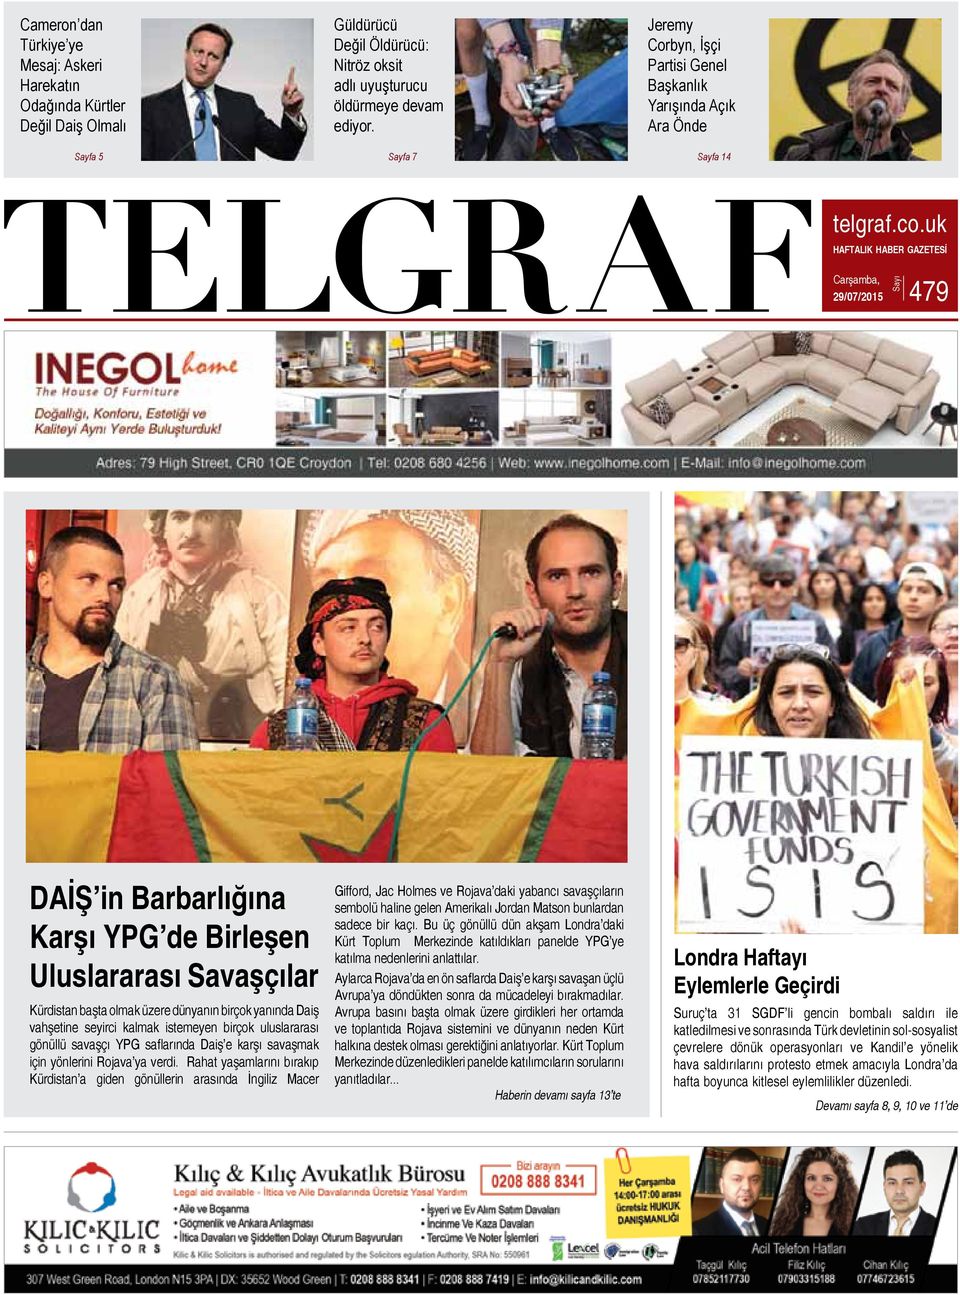 uk Haftalık Haber Gazetesİ Carşamba, 29/07/2015 479 Sayı DAİŞ in Barbarlığına Karşı YPG de Birleşen Uluslararası Savaşçılar Kürdistan başta olmak üzere dünyanın birçok yanında Daiş vahşetine seyirci